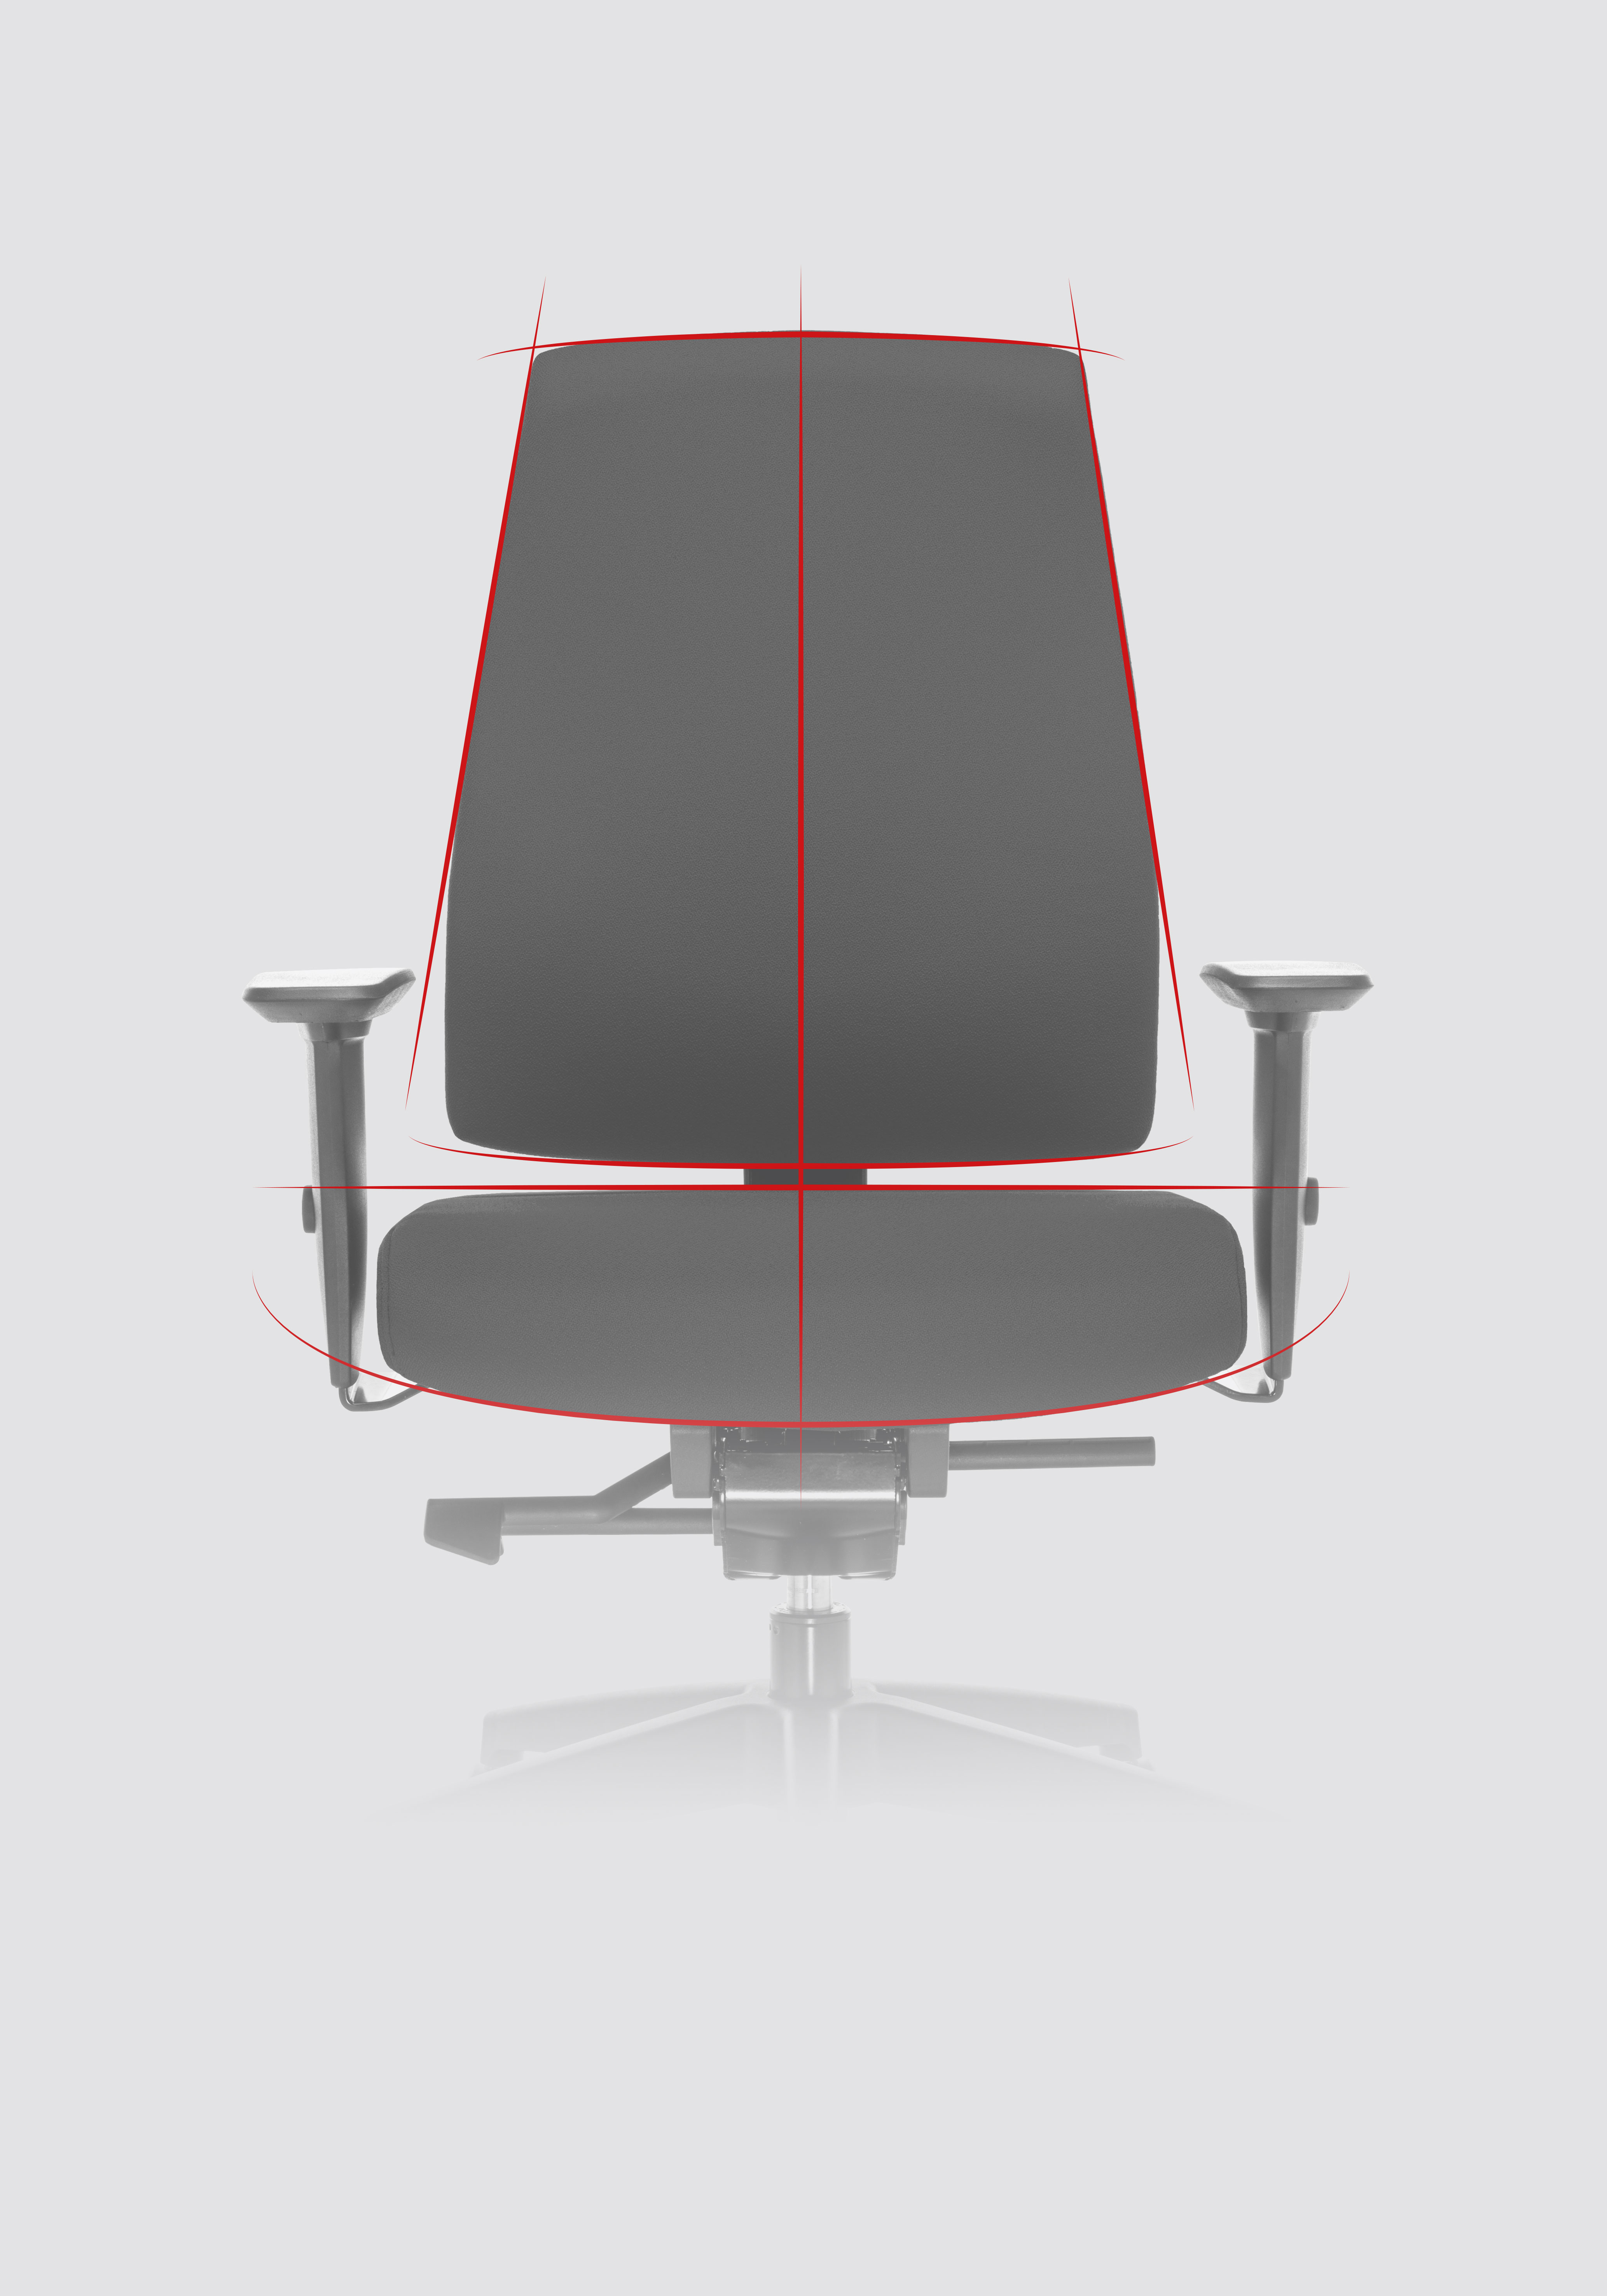 Vista frontal de la silla giratoria Goal; se destacan los contornos de la silla de oficina mediante líneas dinámicas